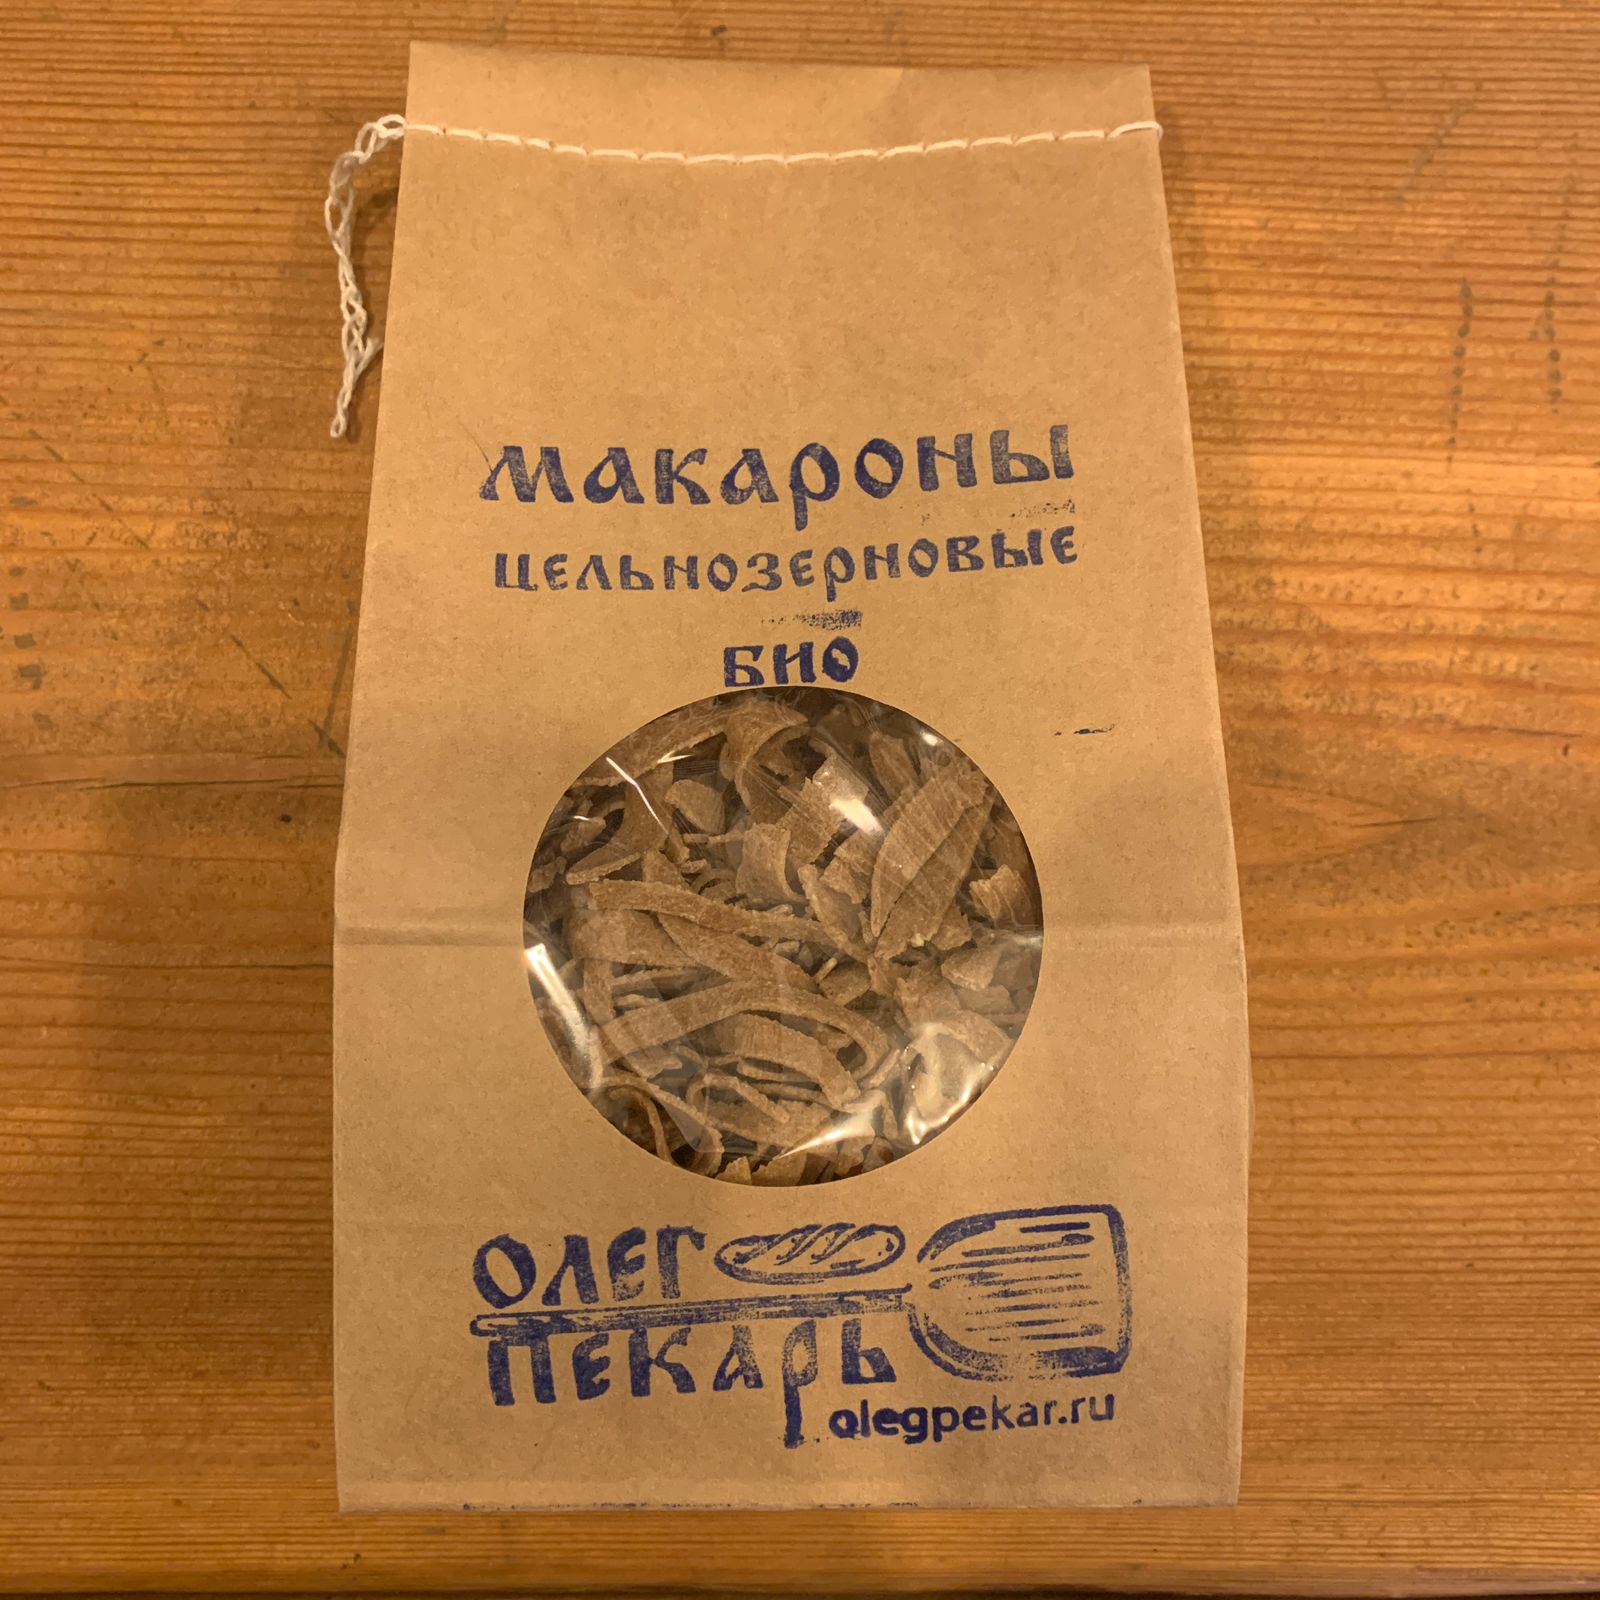 Лапша, макароны цельнозерновые пшеничные, Олег Пекарь